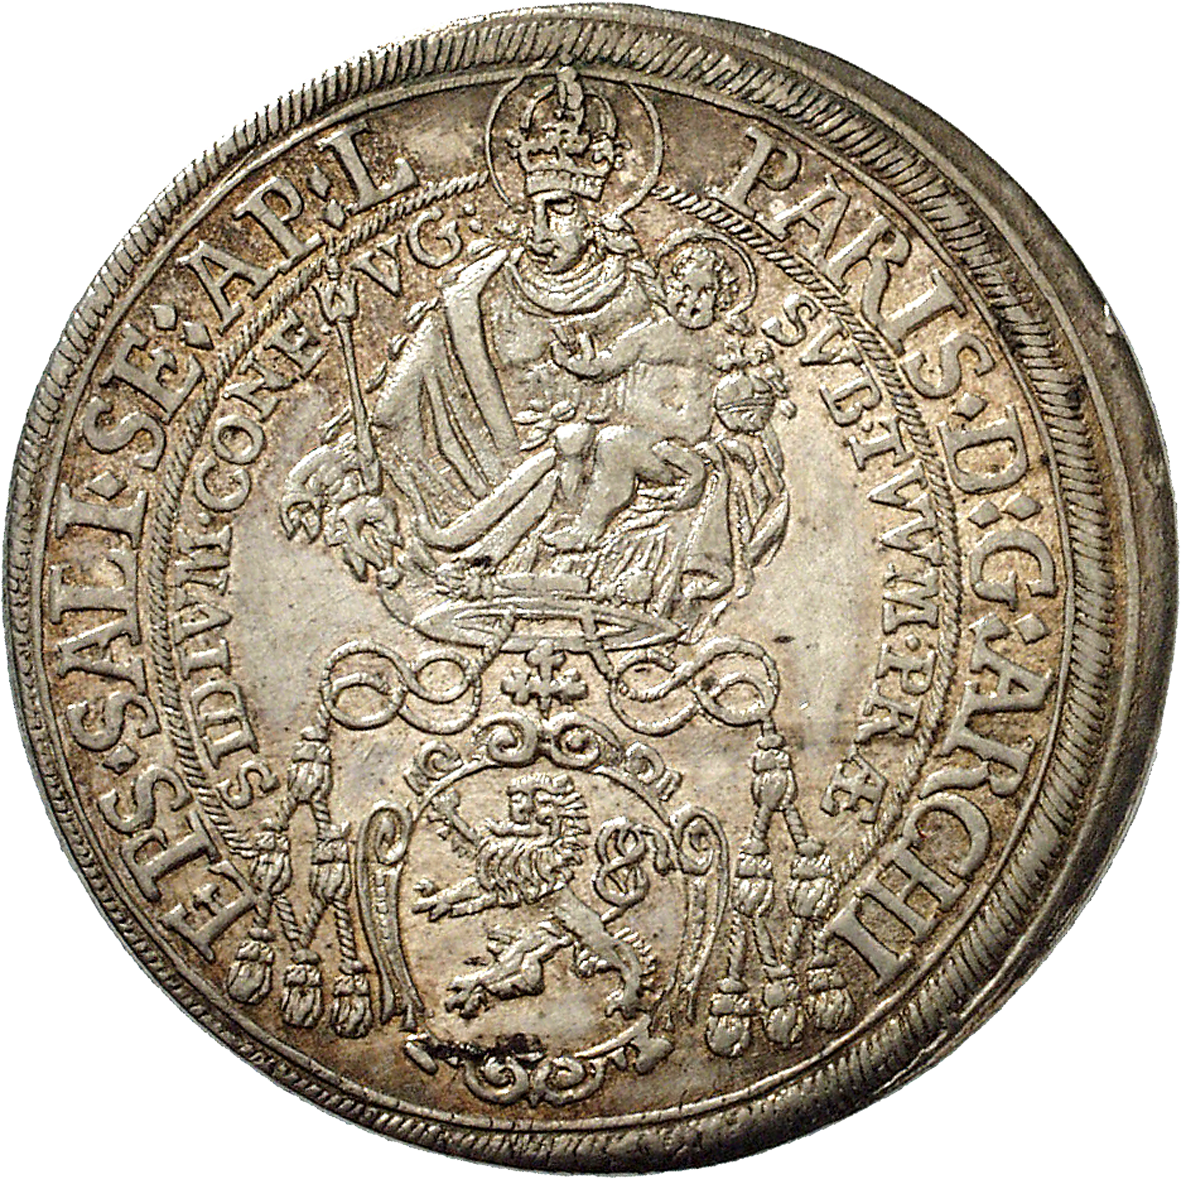 Heiliges Römisches Reich, Fürstbistum Salzburg, Paris von Lodron, Taler 1631 (obverse)